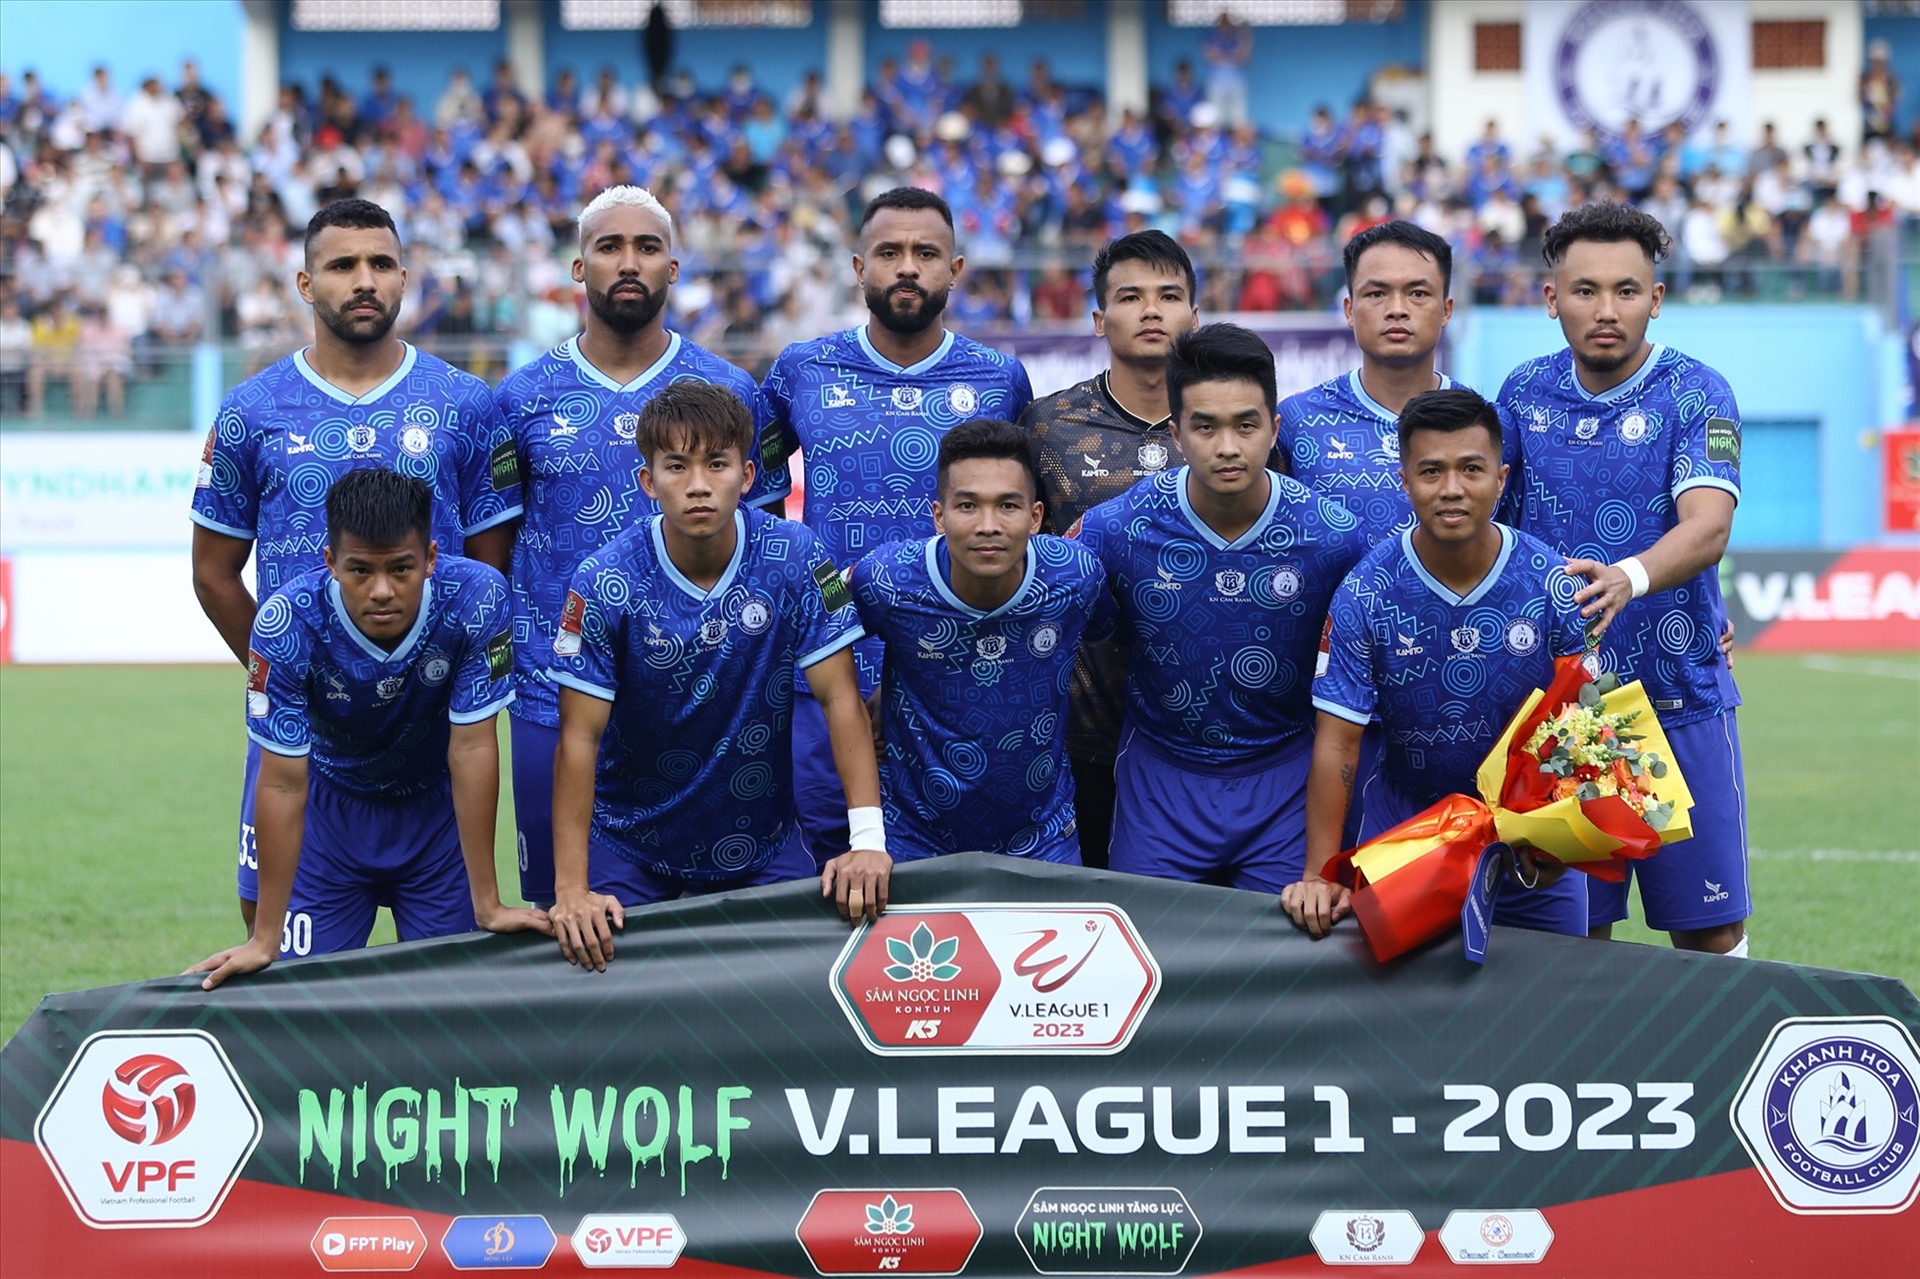 Câu lạc bộ Khánh Hoà sẽ đối diện với nhiều thử thách trong giai đoạn 2 V.League. Ảnh: Thanh Vũ